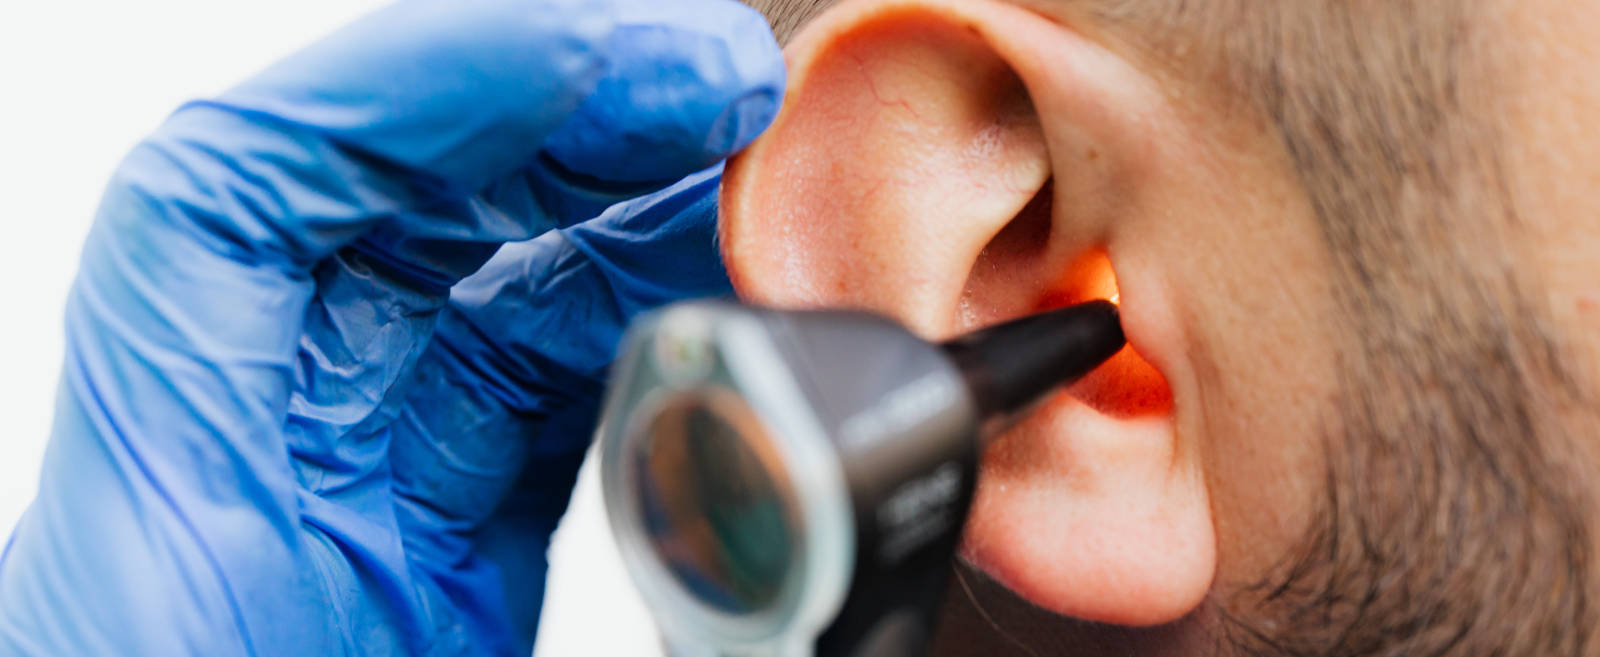 Vos audioprothésistes Audition Conseil vous en disent plus sur l'ostéoporose et la perte auditive.